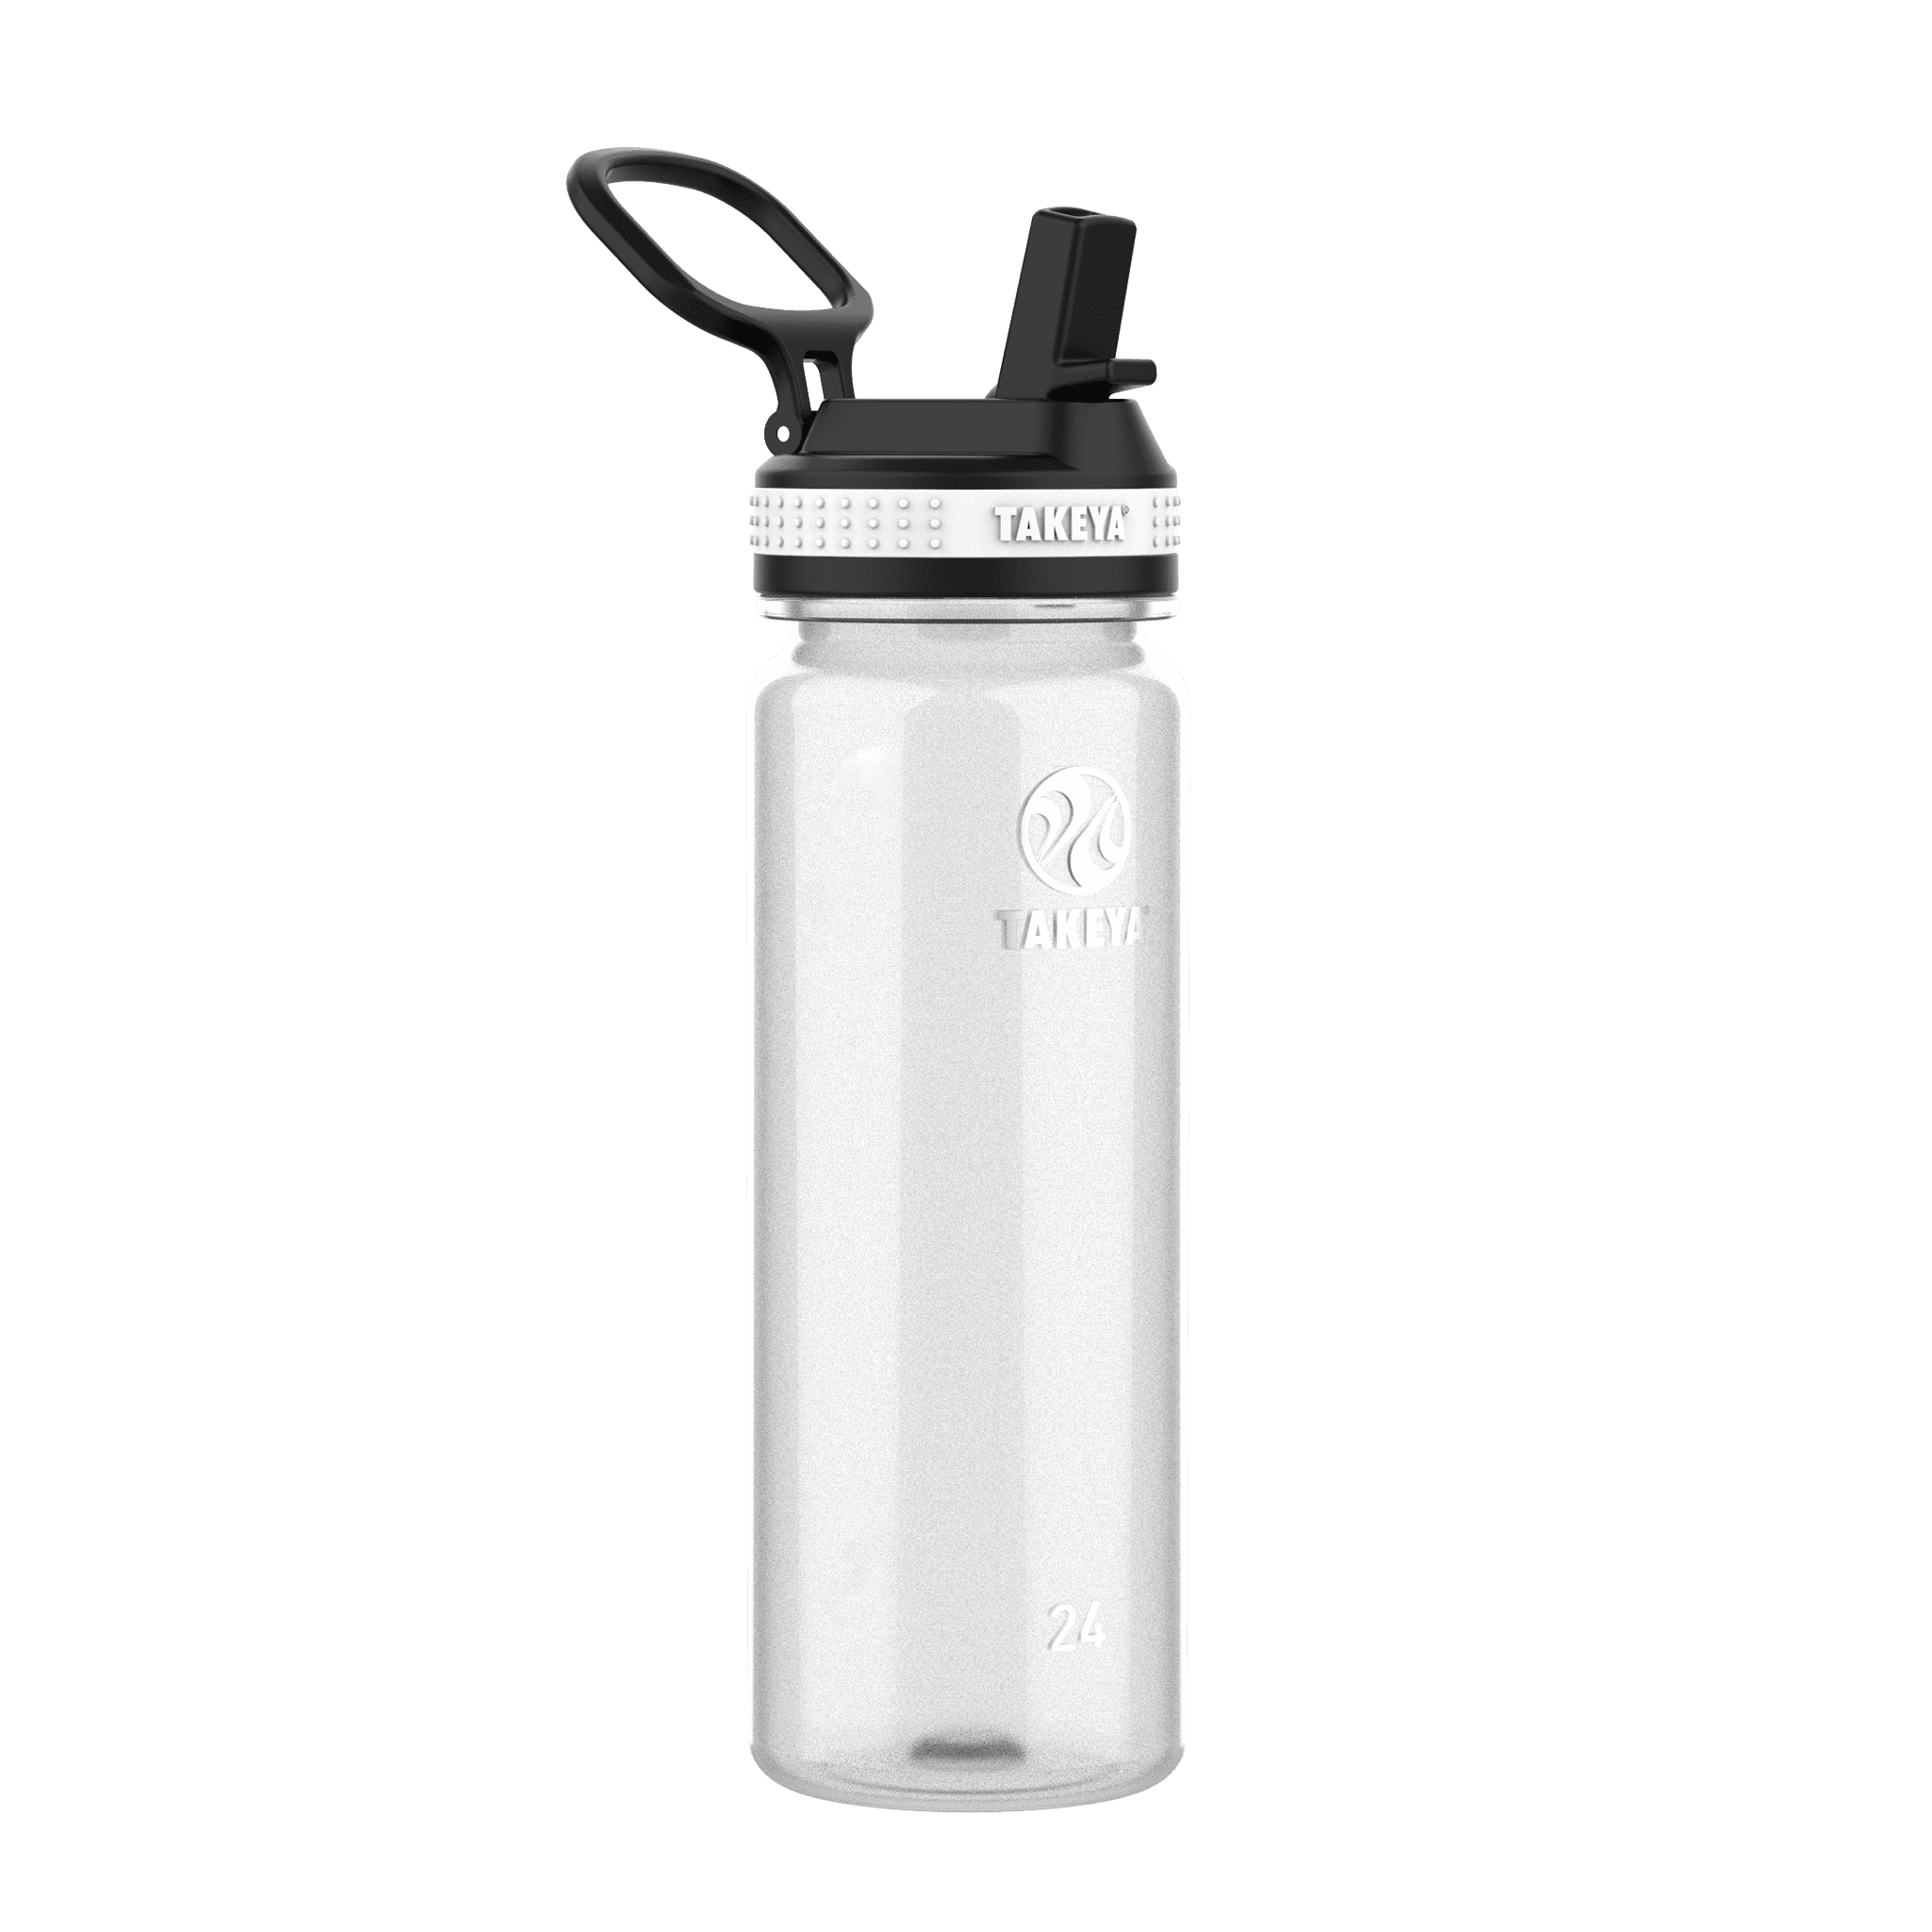 Takeya Tritan Plastic Straw Lid Water Bottle, Lightweight 